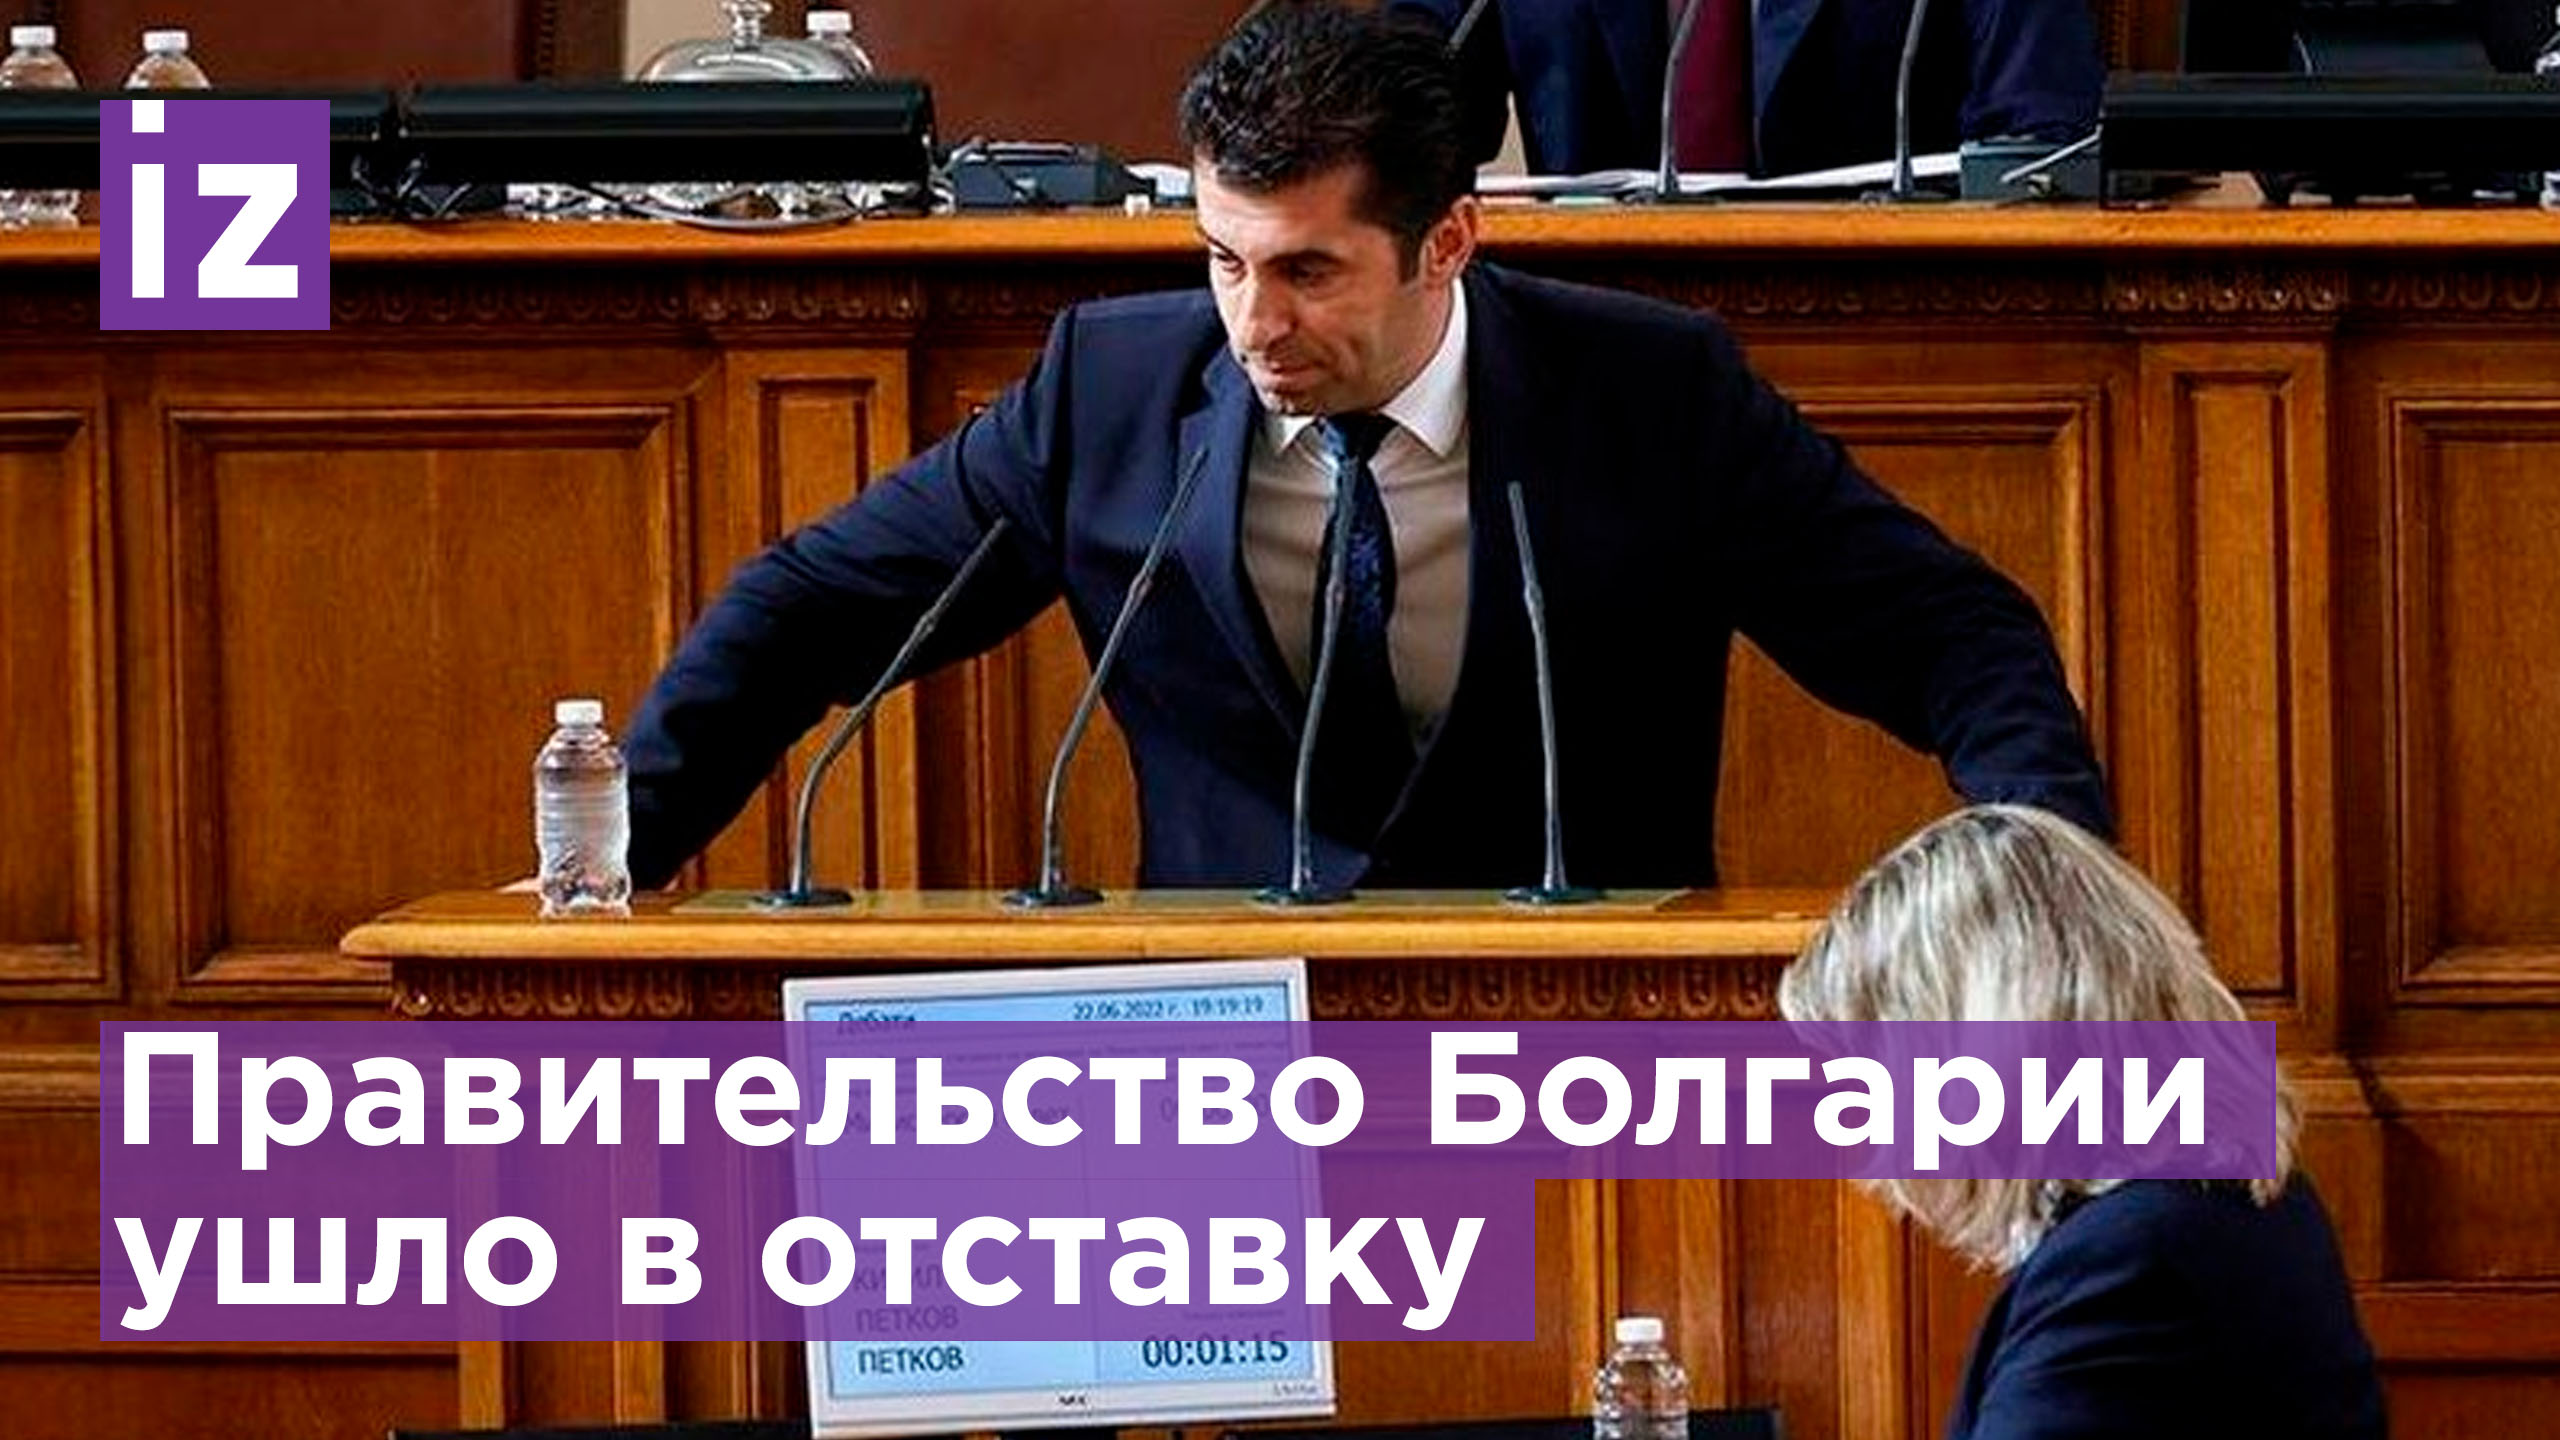 Правительство Болгарии подало заявление об отставке / Известия